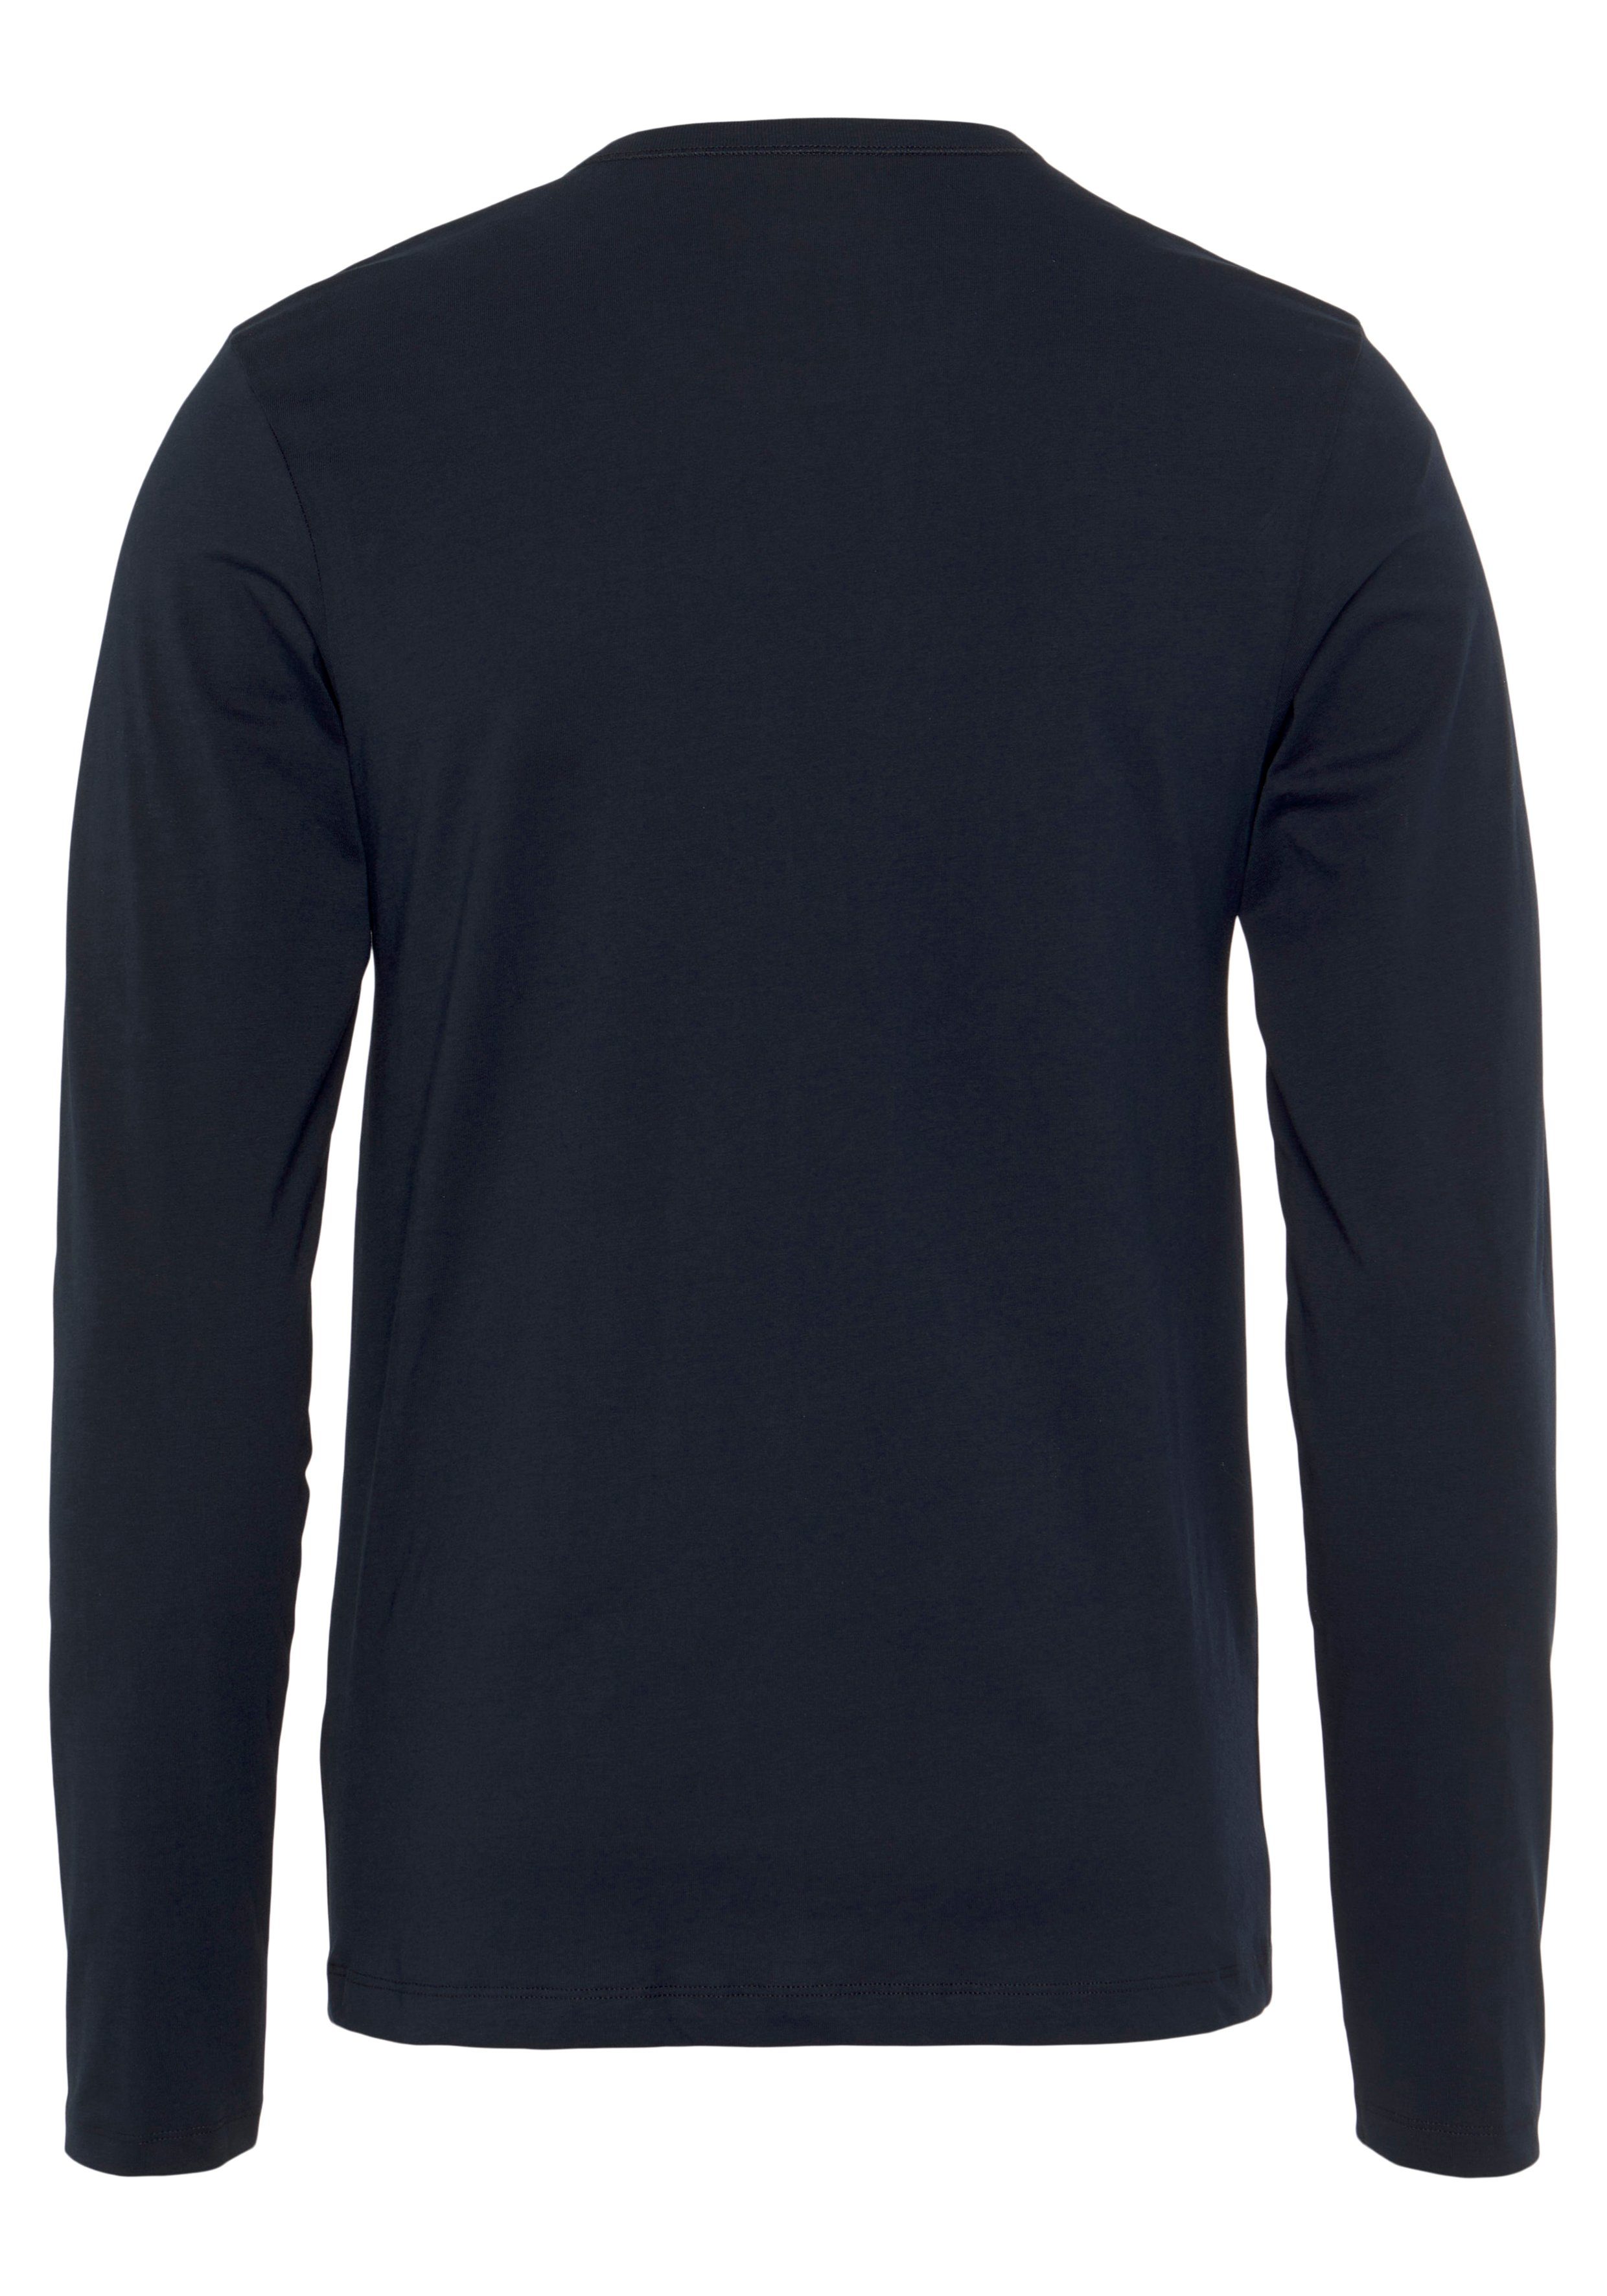 BOSS Langarmshirt mit R-Neck (3-tlg) schwarz, COTTON Classic BOSS 3pcs/pack longsleeve-Shirt weiß Logo-Schriftzug